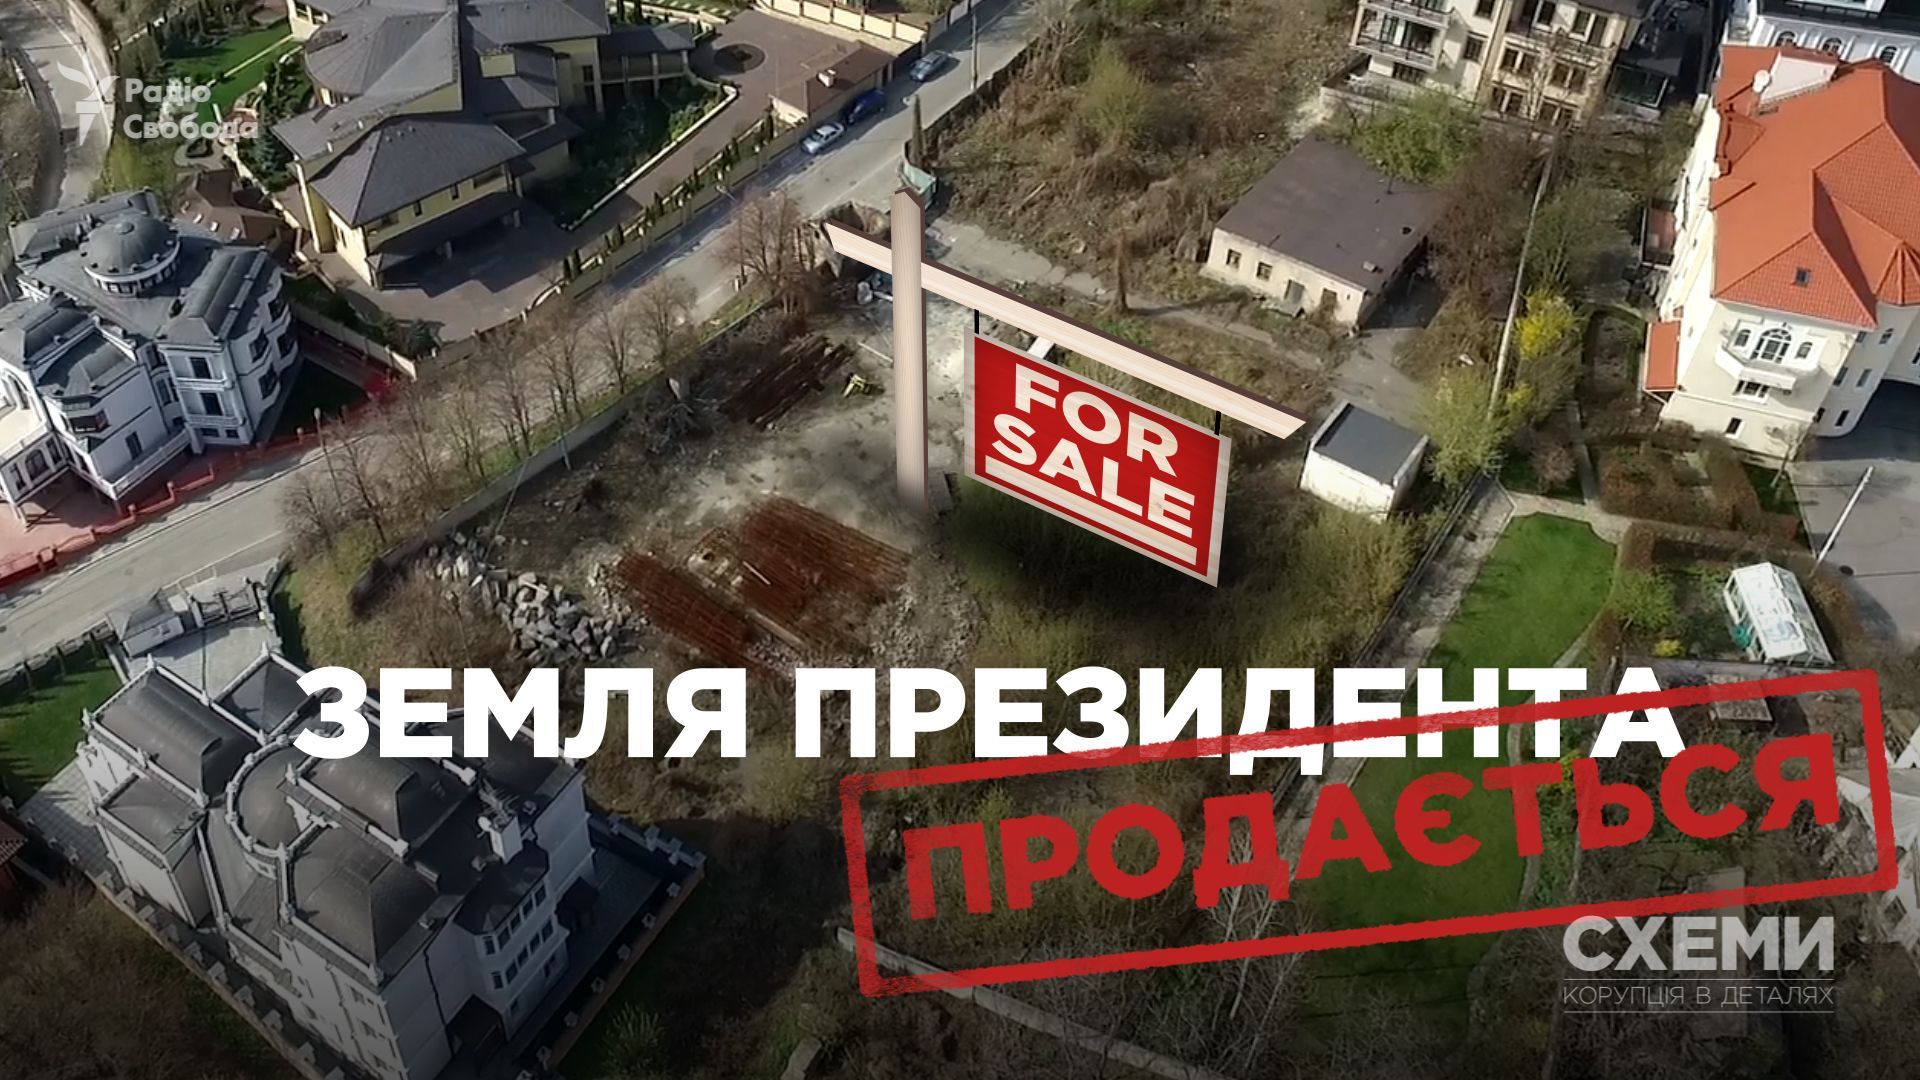 Порошенко выставил на продажу землю в Киеве, полученную с помощью незаконной сделки